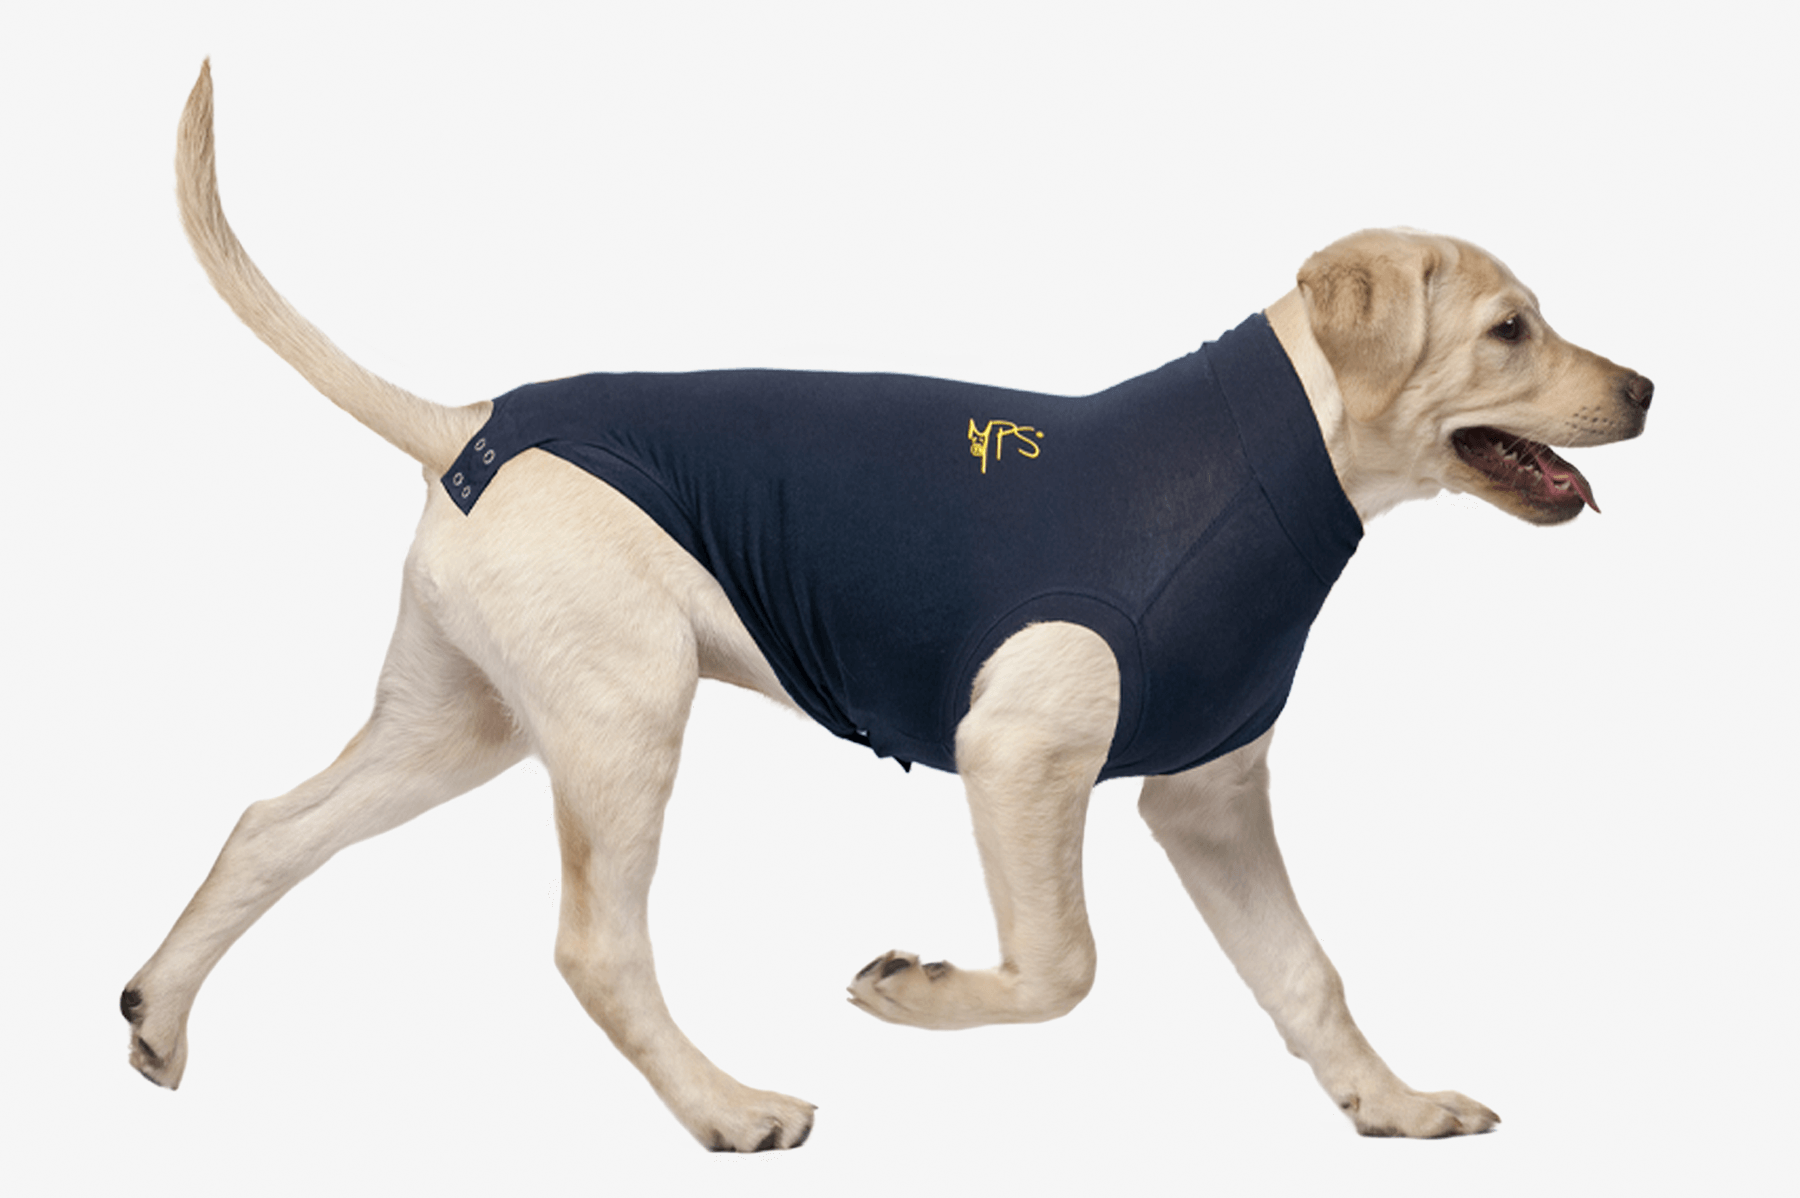 MPSMEDICAL PET SHIRT HUND Medical Pet Shirts